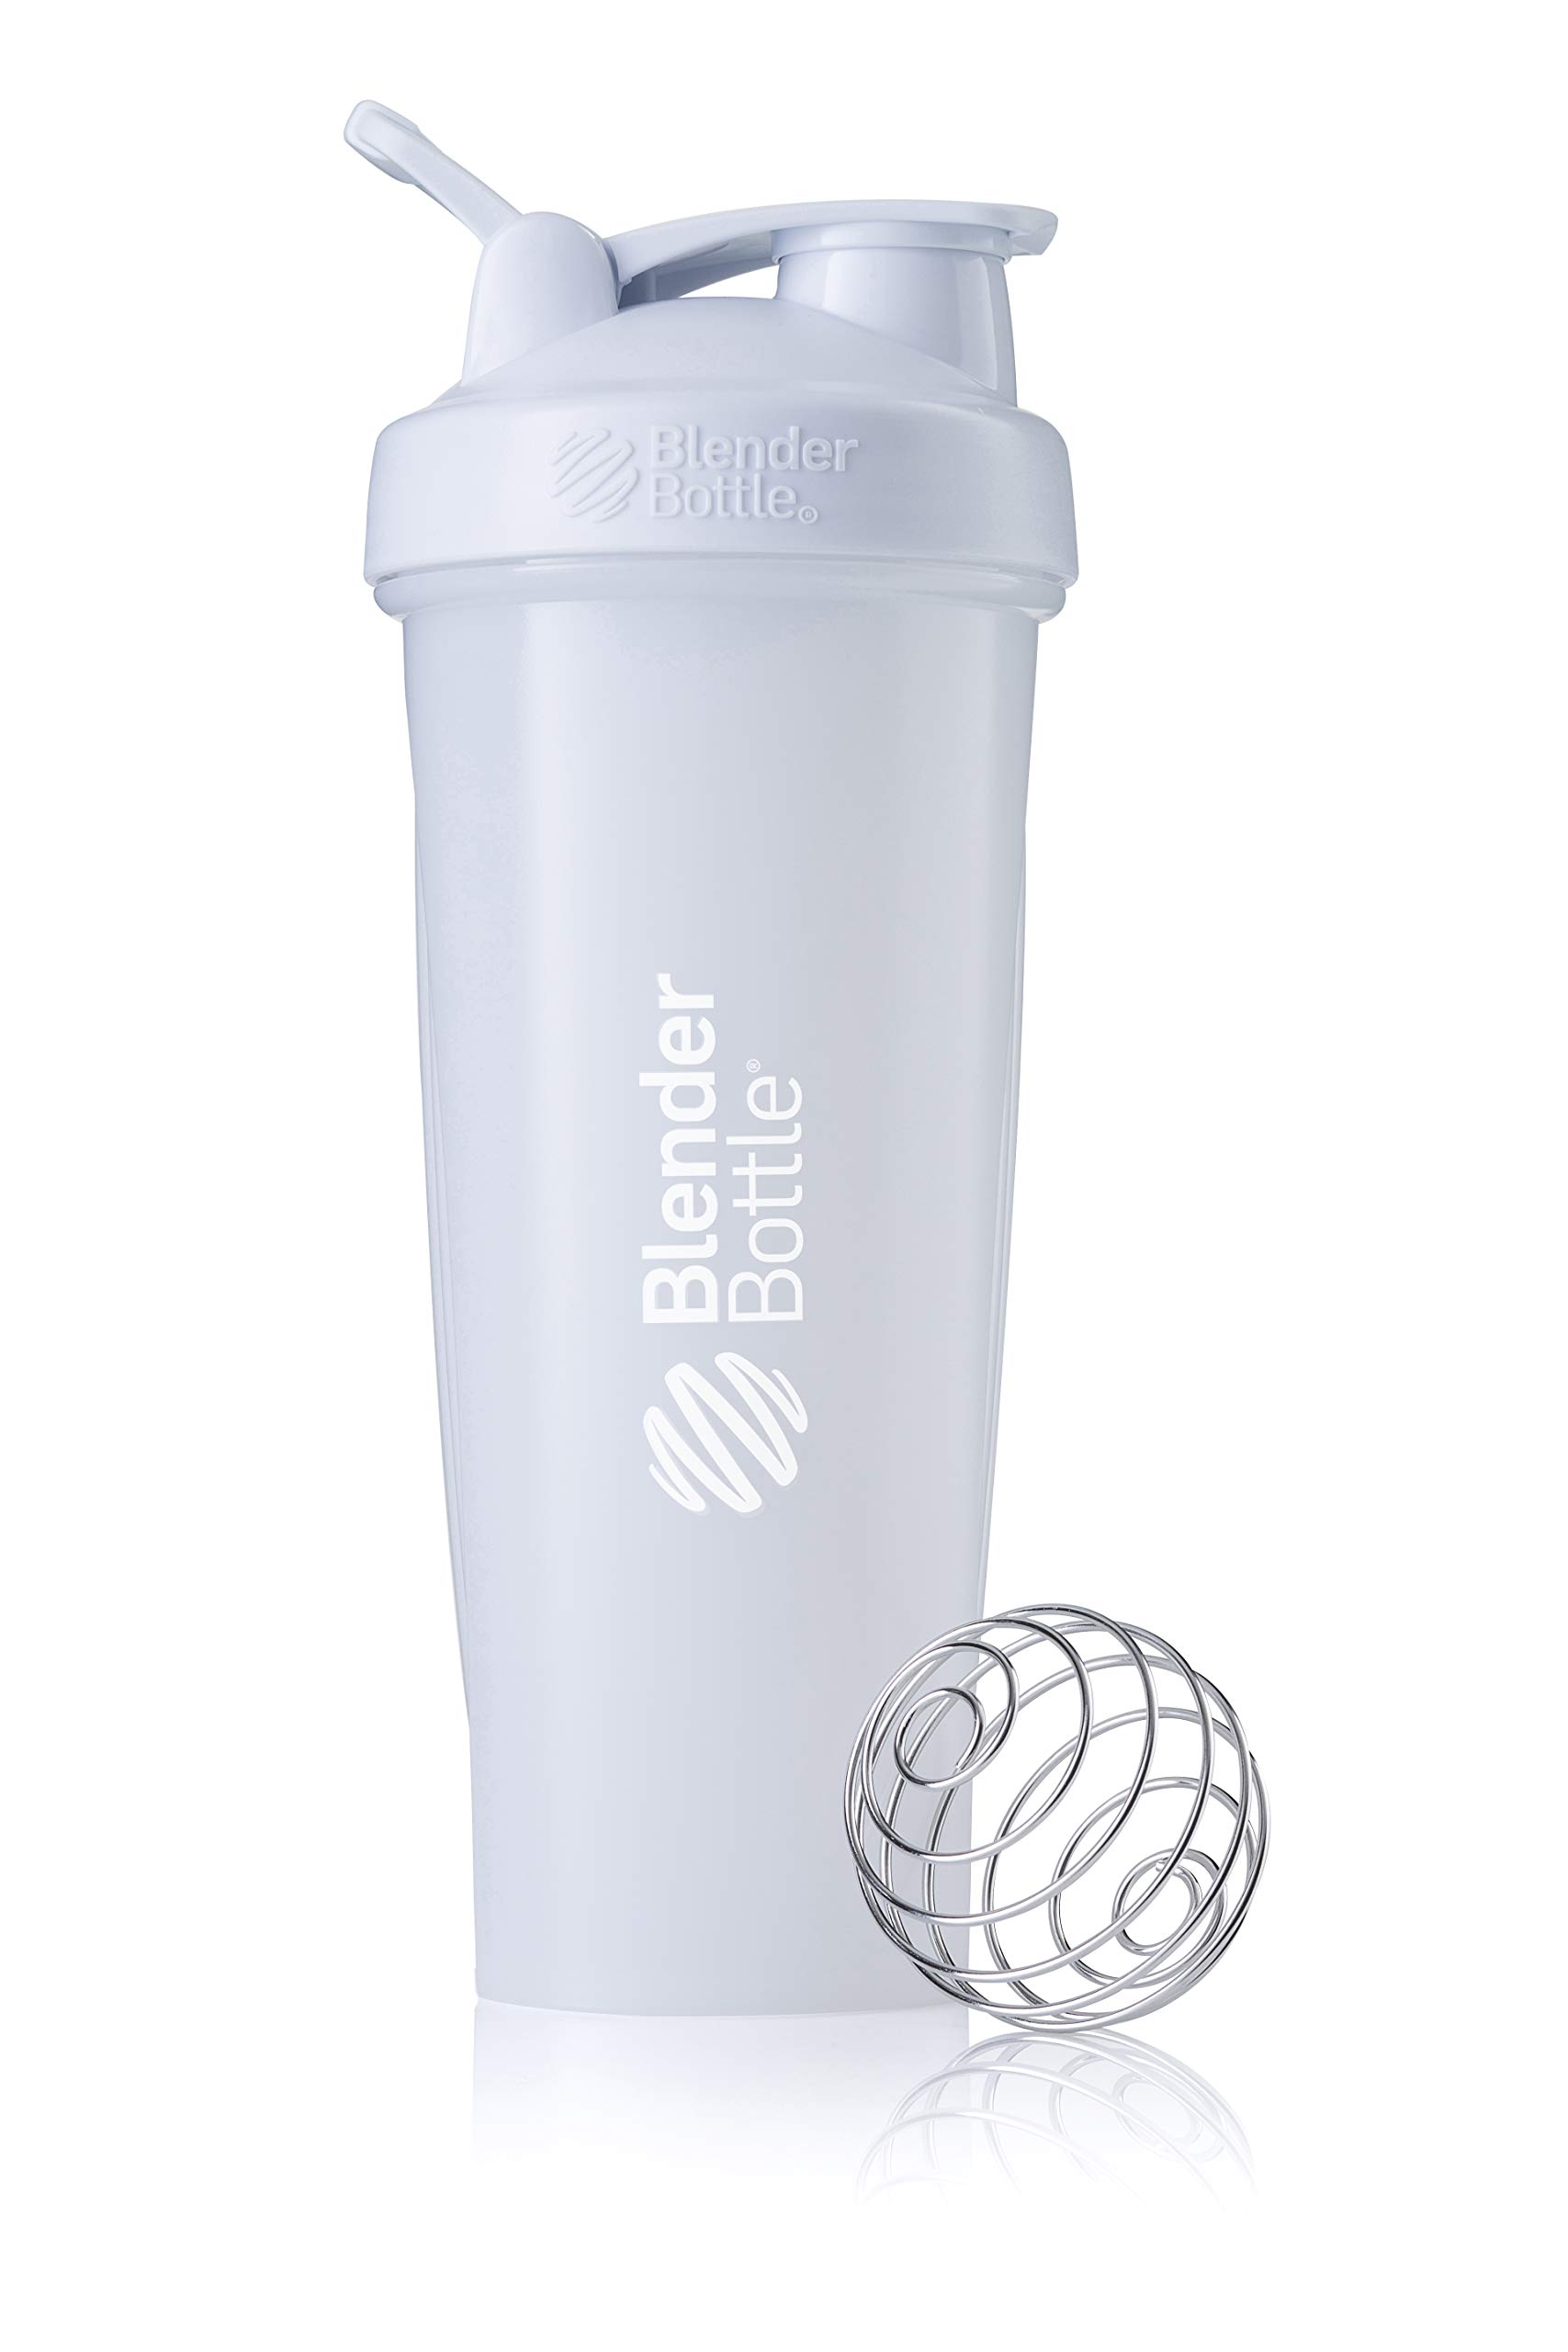 BlenderBottle Classic Loop Shaker mit BlenderBall, optimal geeignet als Eiweiß Shaker, Protein Shaker, Wasserflasche, Trinkflasche, BPA frei, skaliert bis 800 ml, 940 ml, weiß